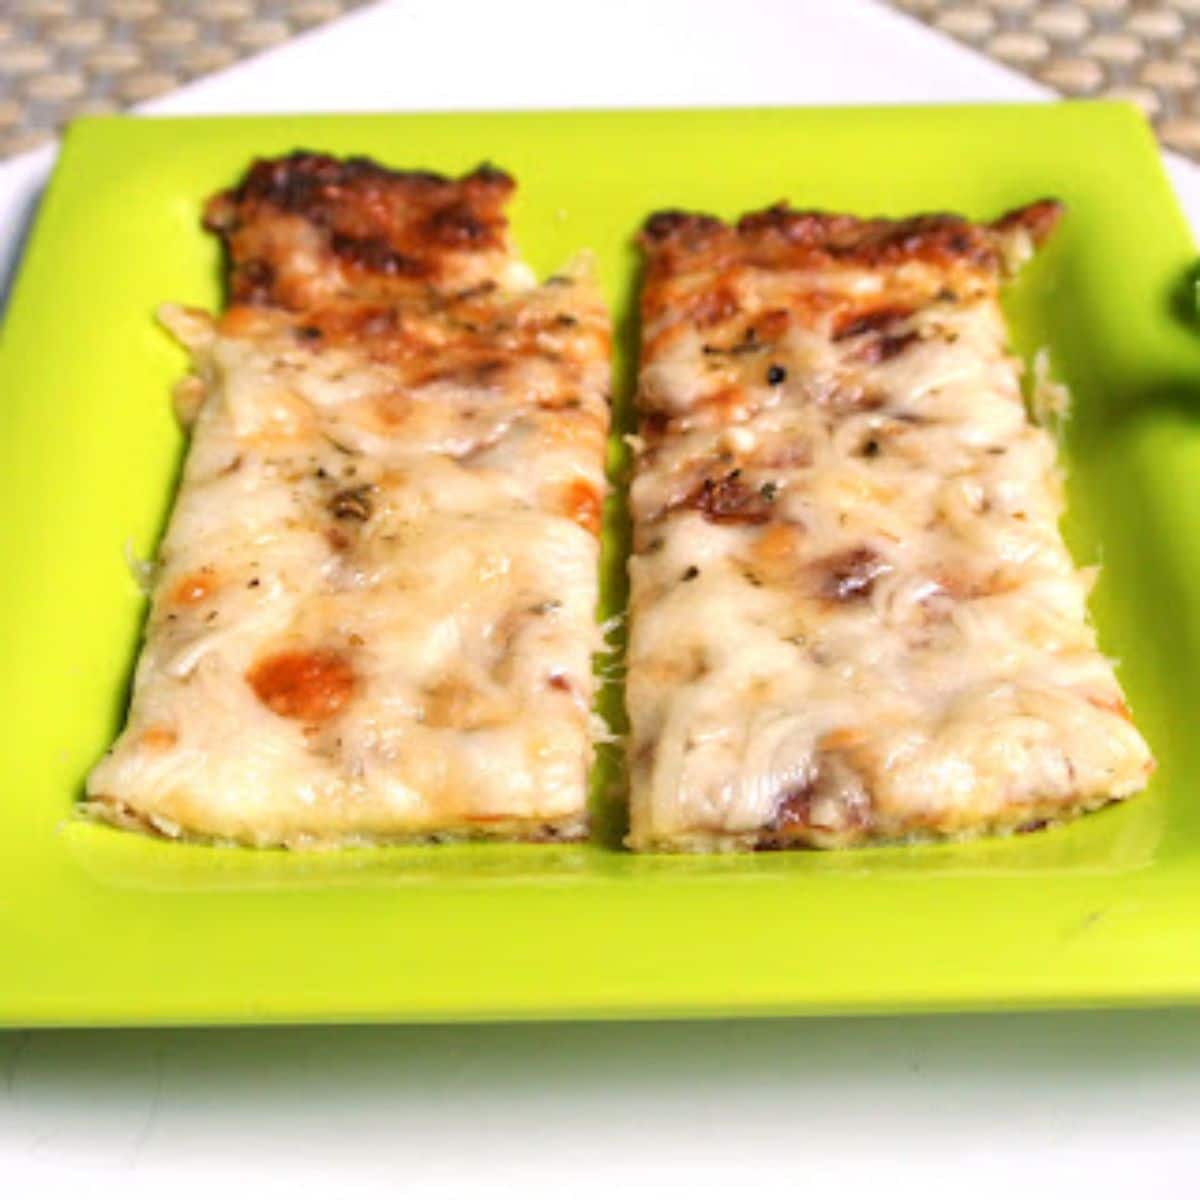 Cheesy Garlic Cauliflower Bread Sticks on a green plate.